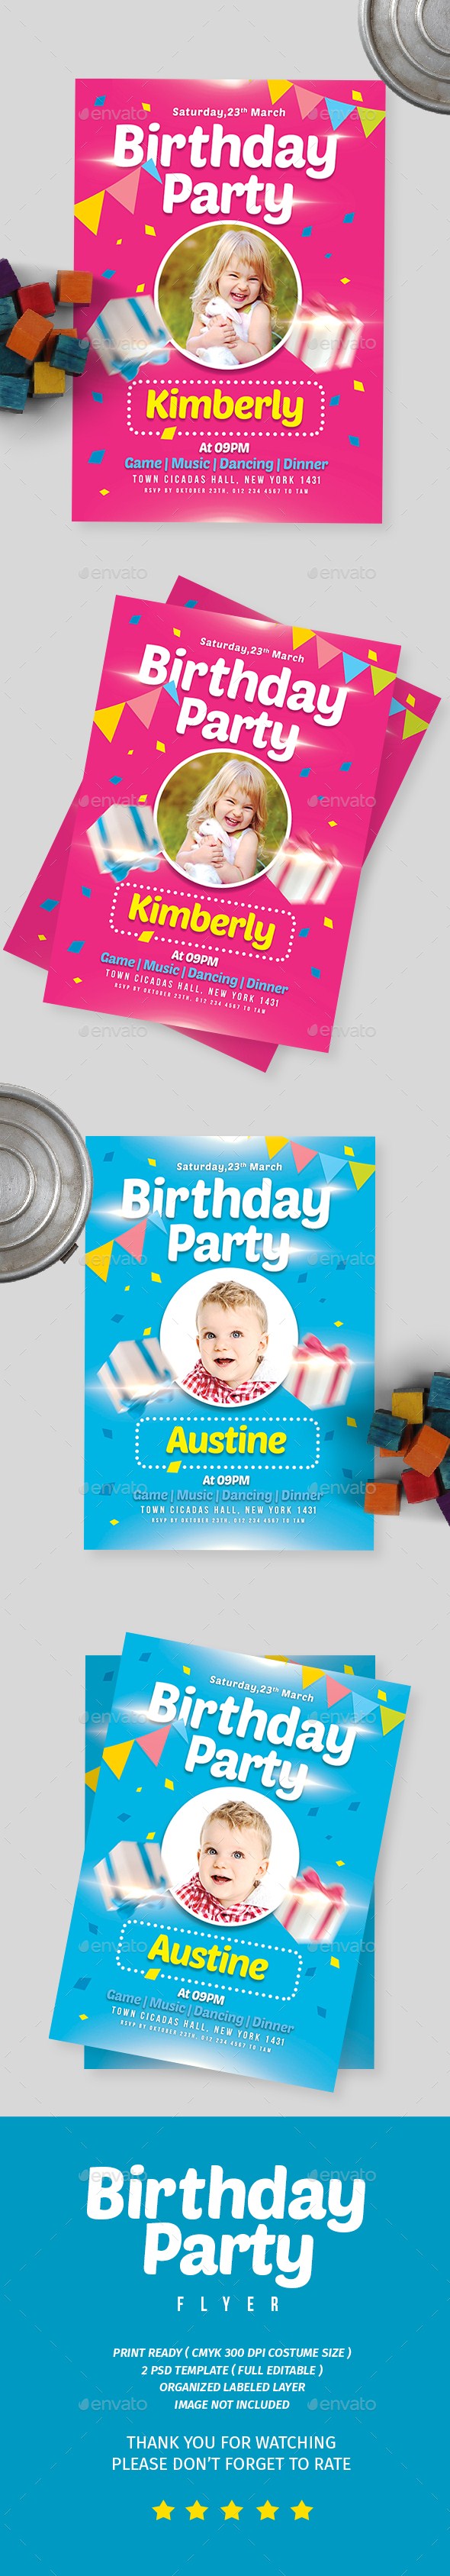 کارت دعوت جشن تولد کودک